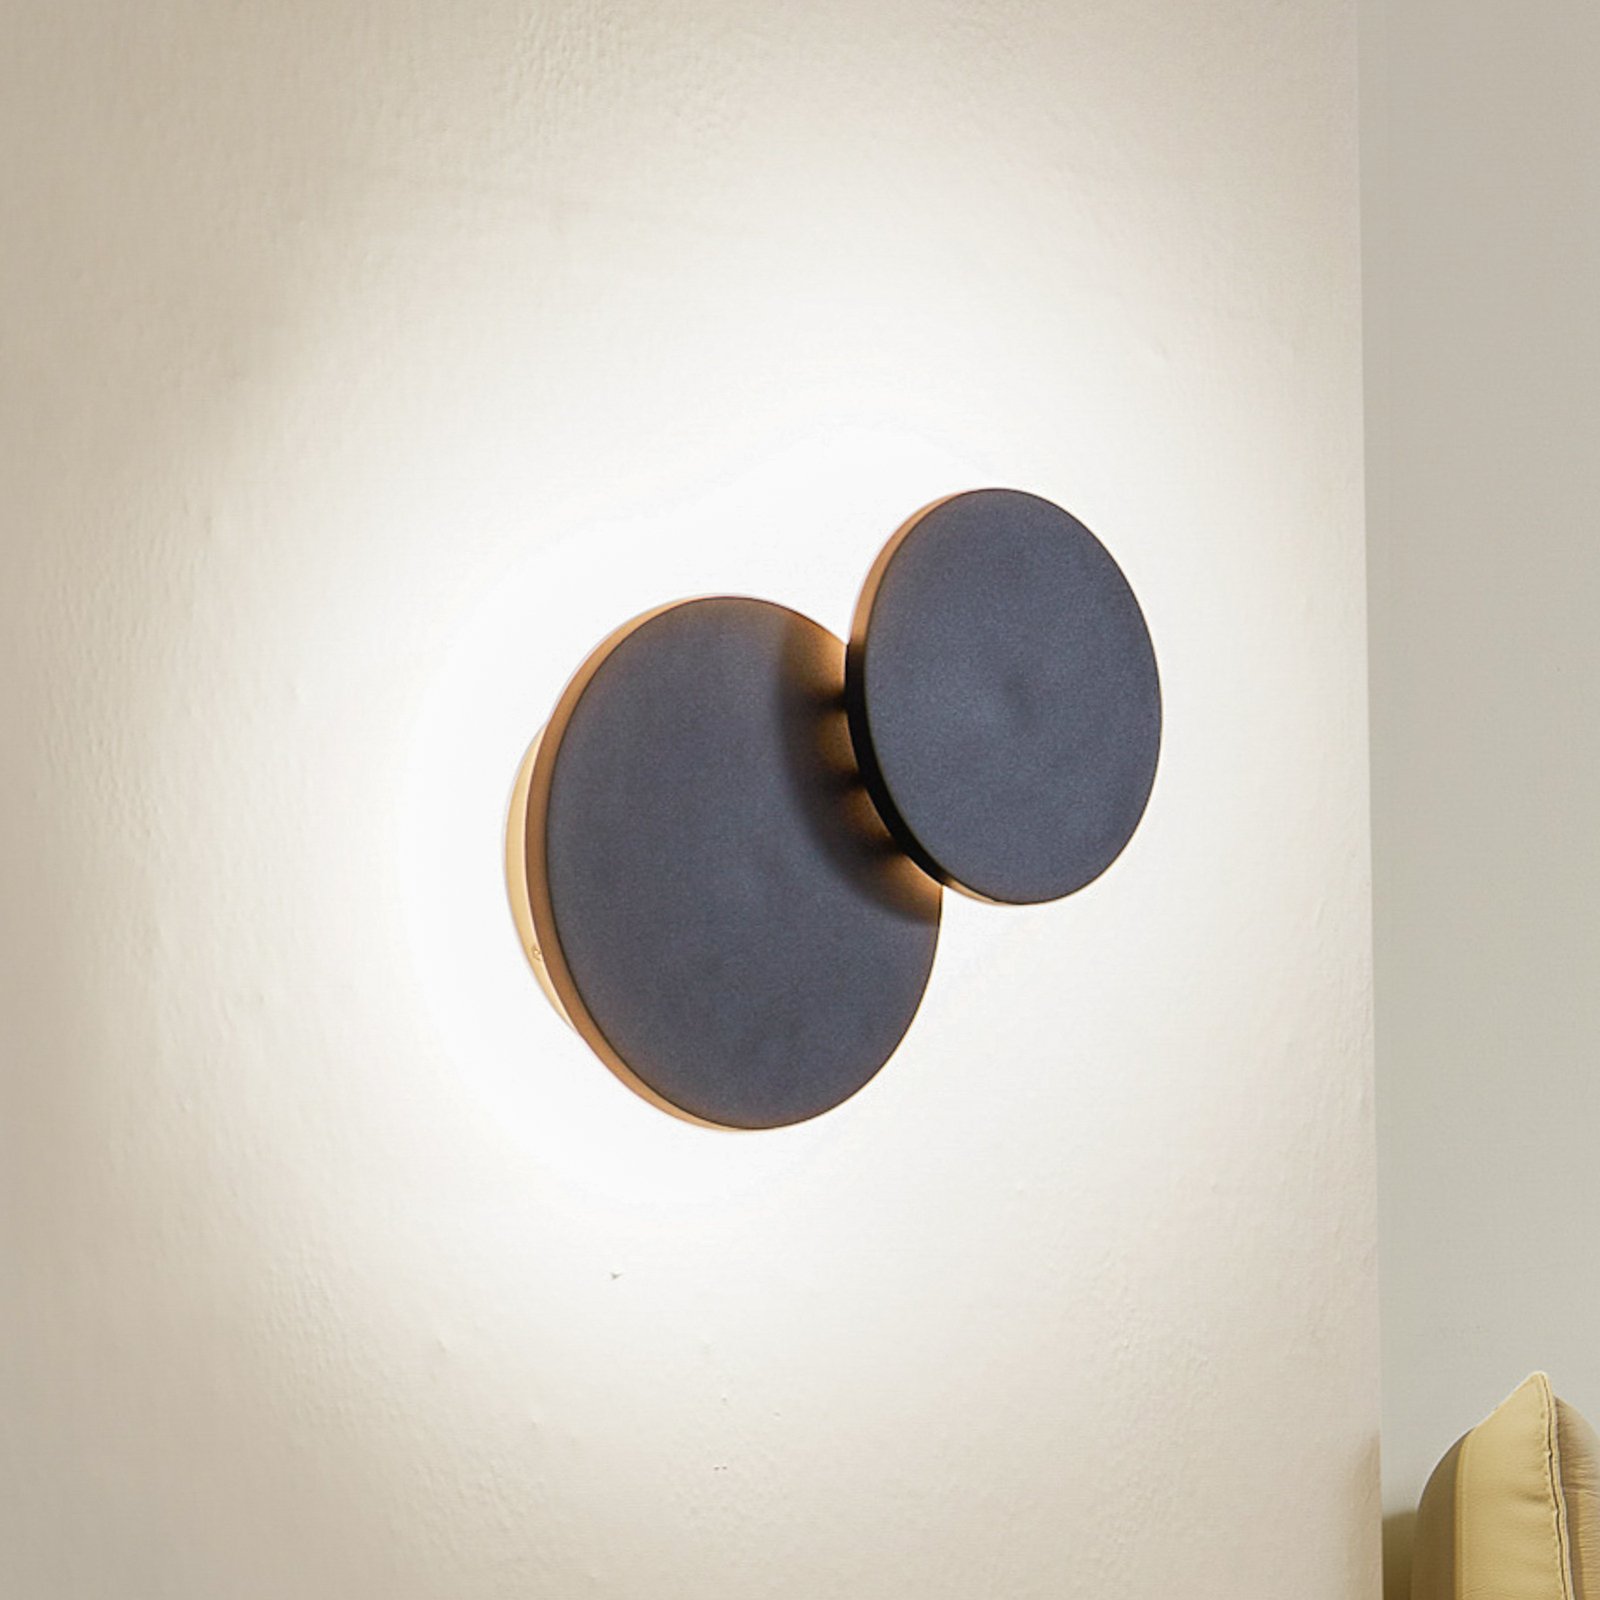 Lucande LED wall light Elrik, preto, 20 cm de altura, metal